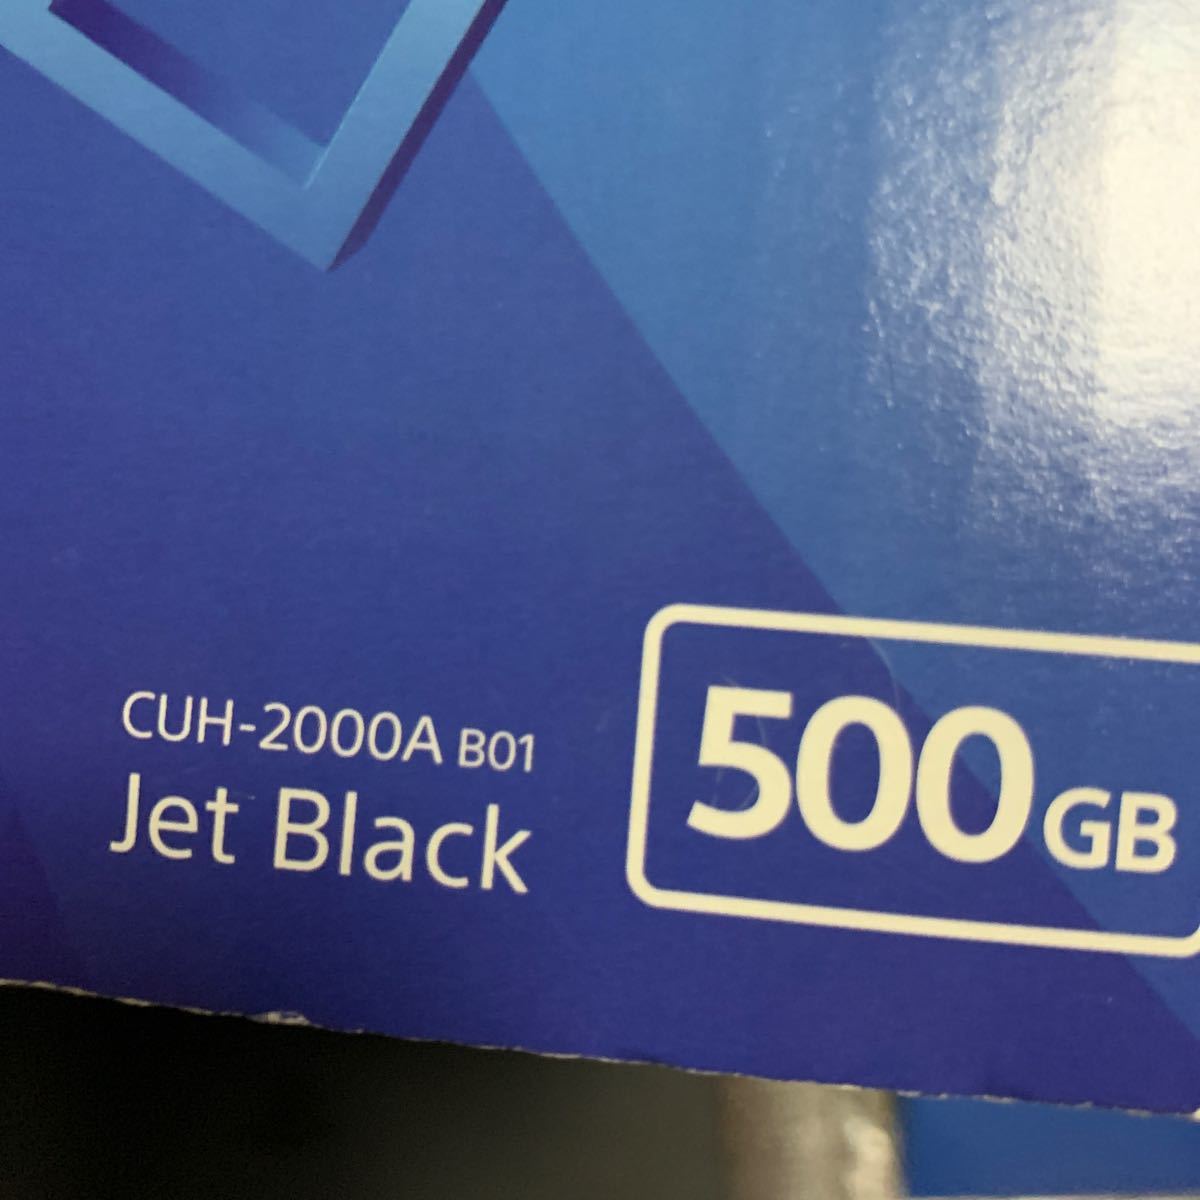 PlayStation4 ジェット・ブラック 500GB CUH-2000AB01  中古美品